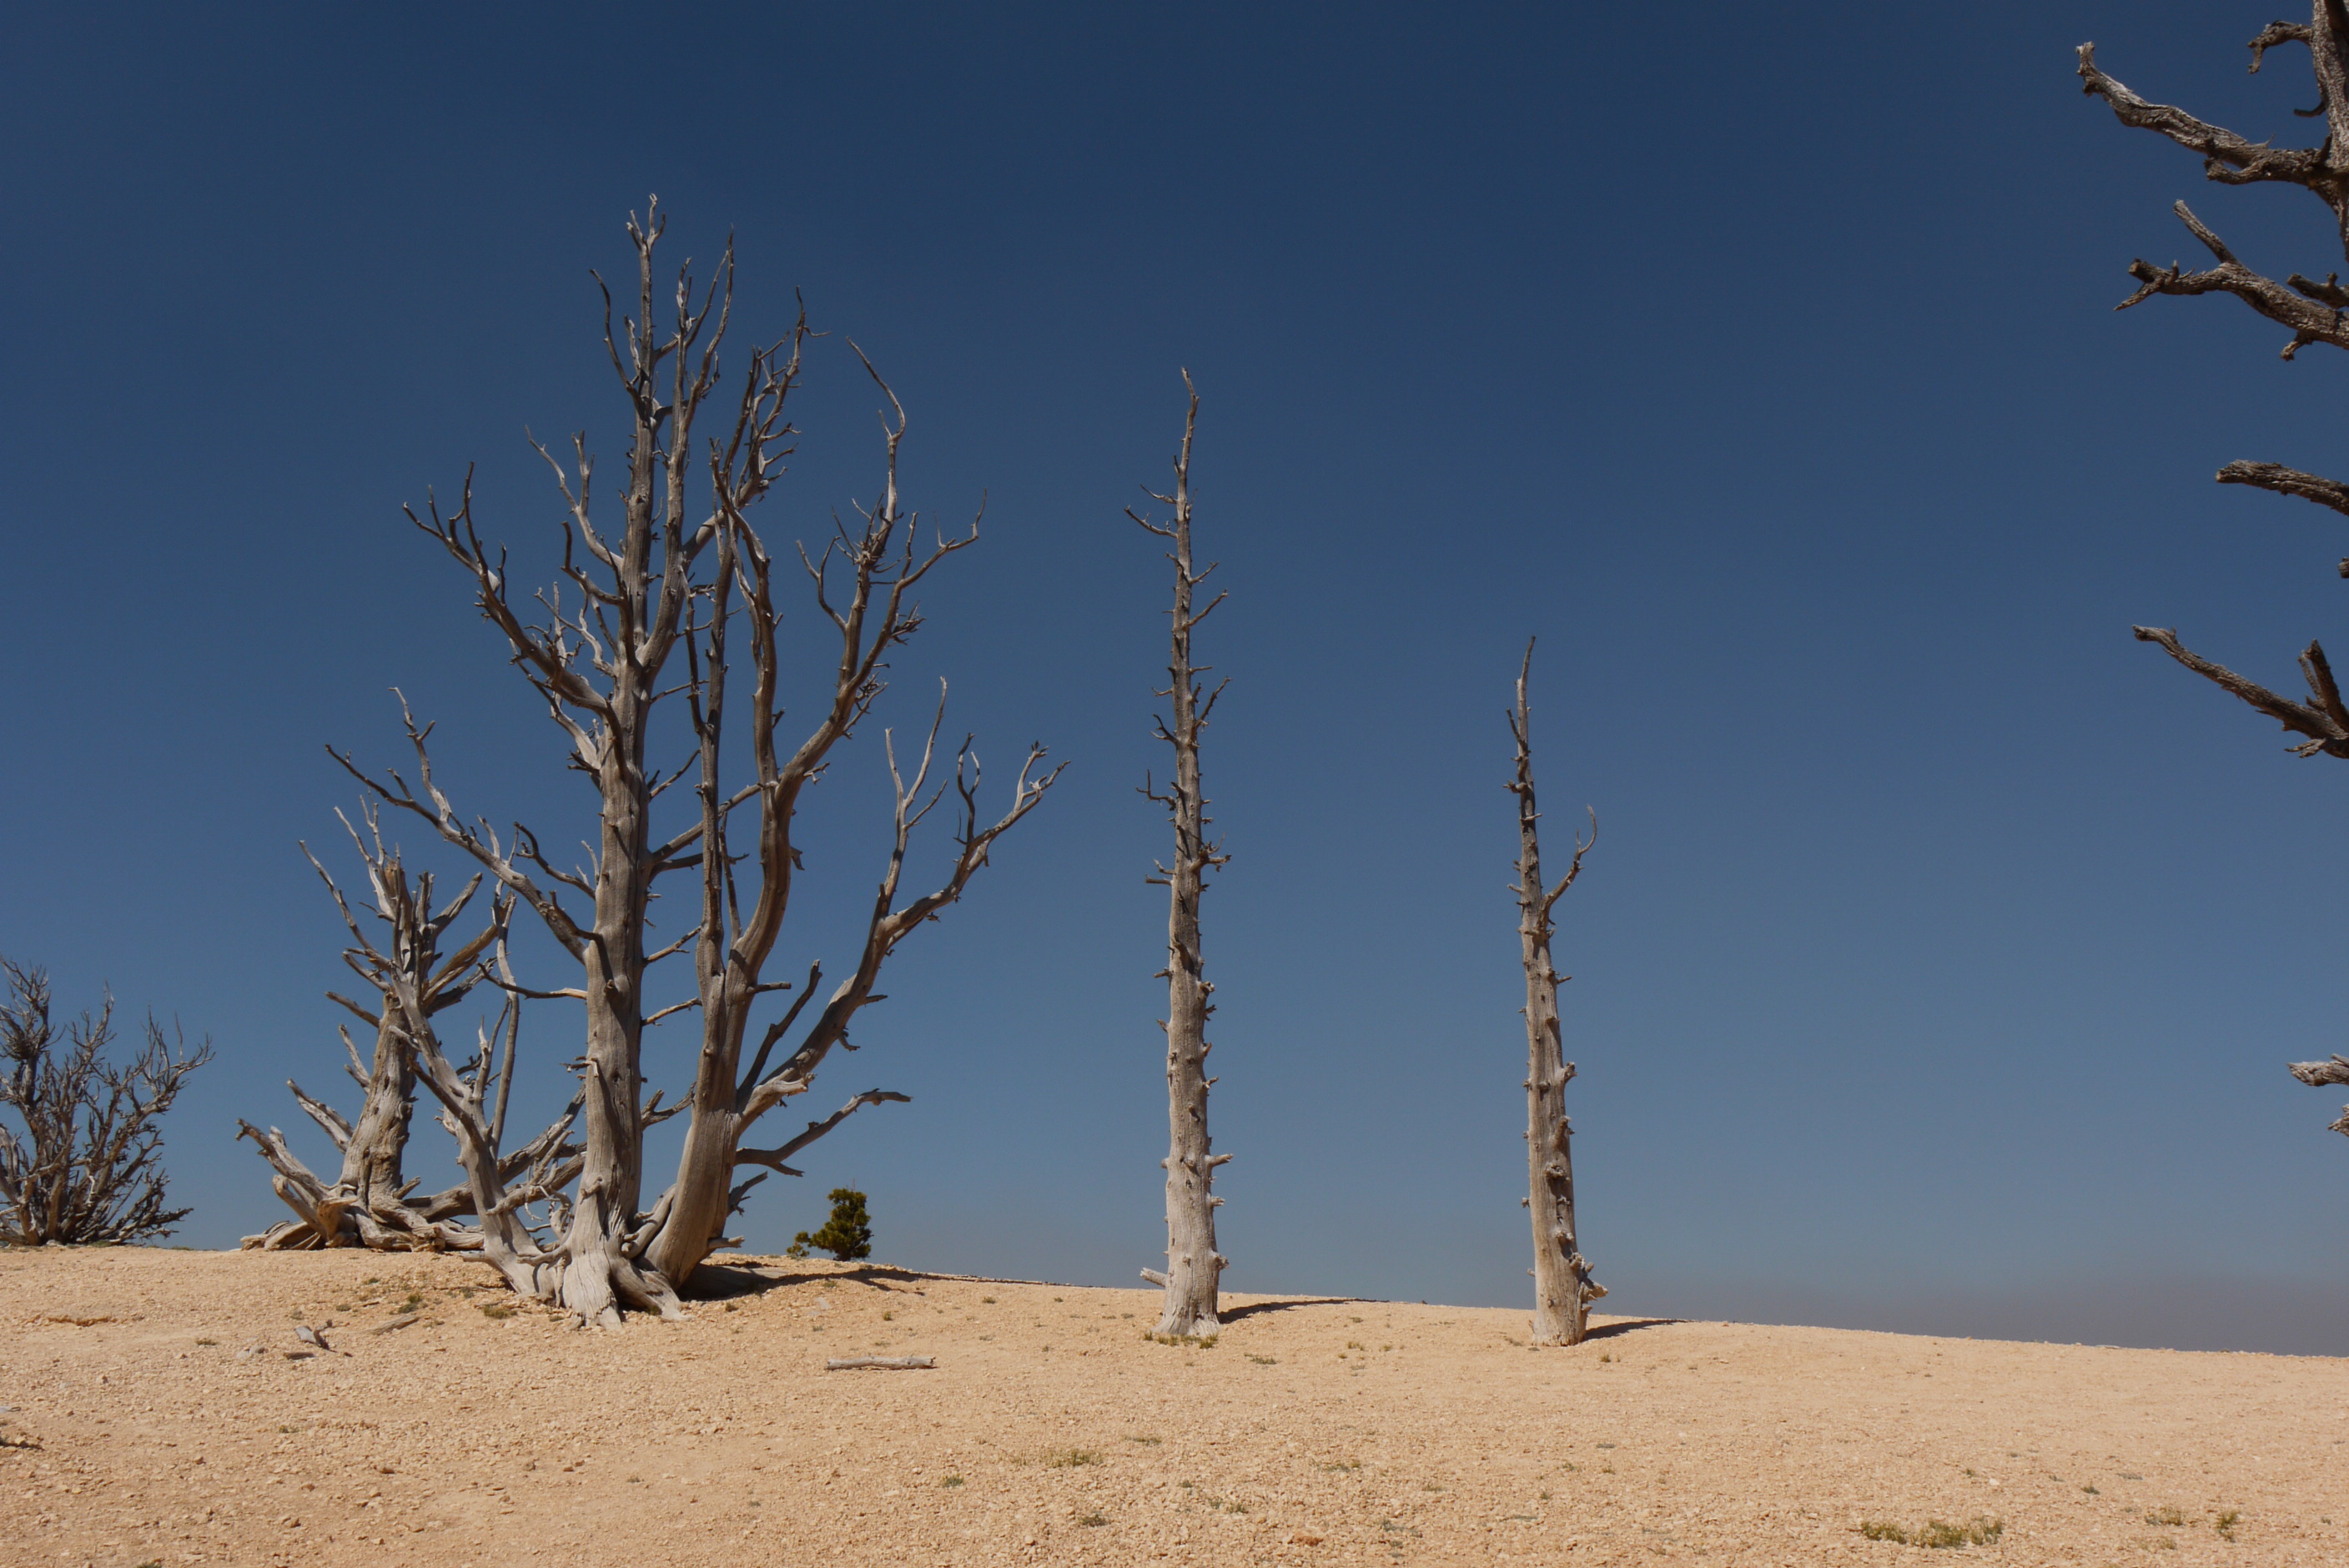 Dead trees in the desert